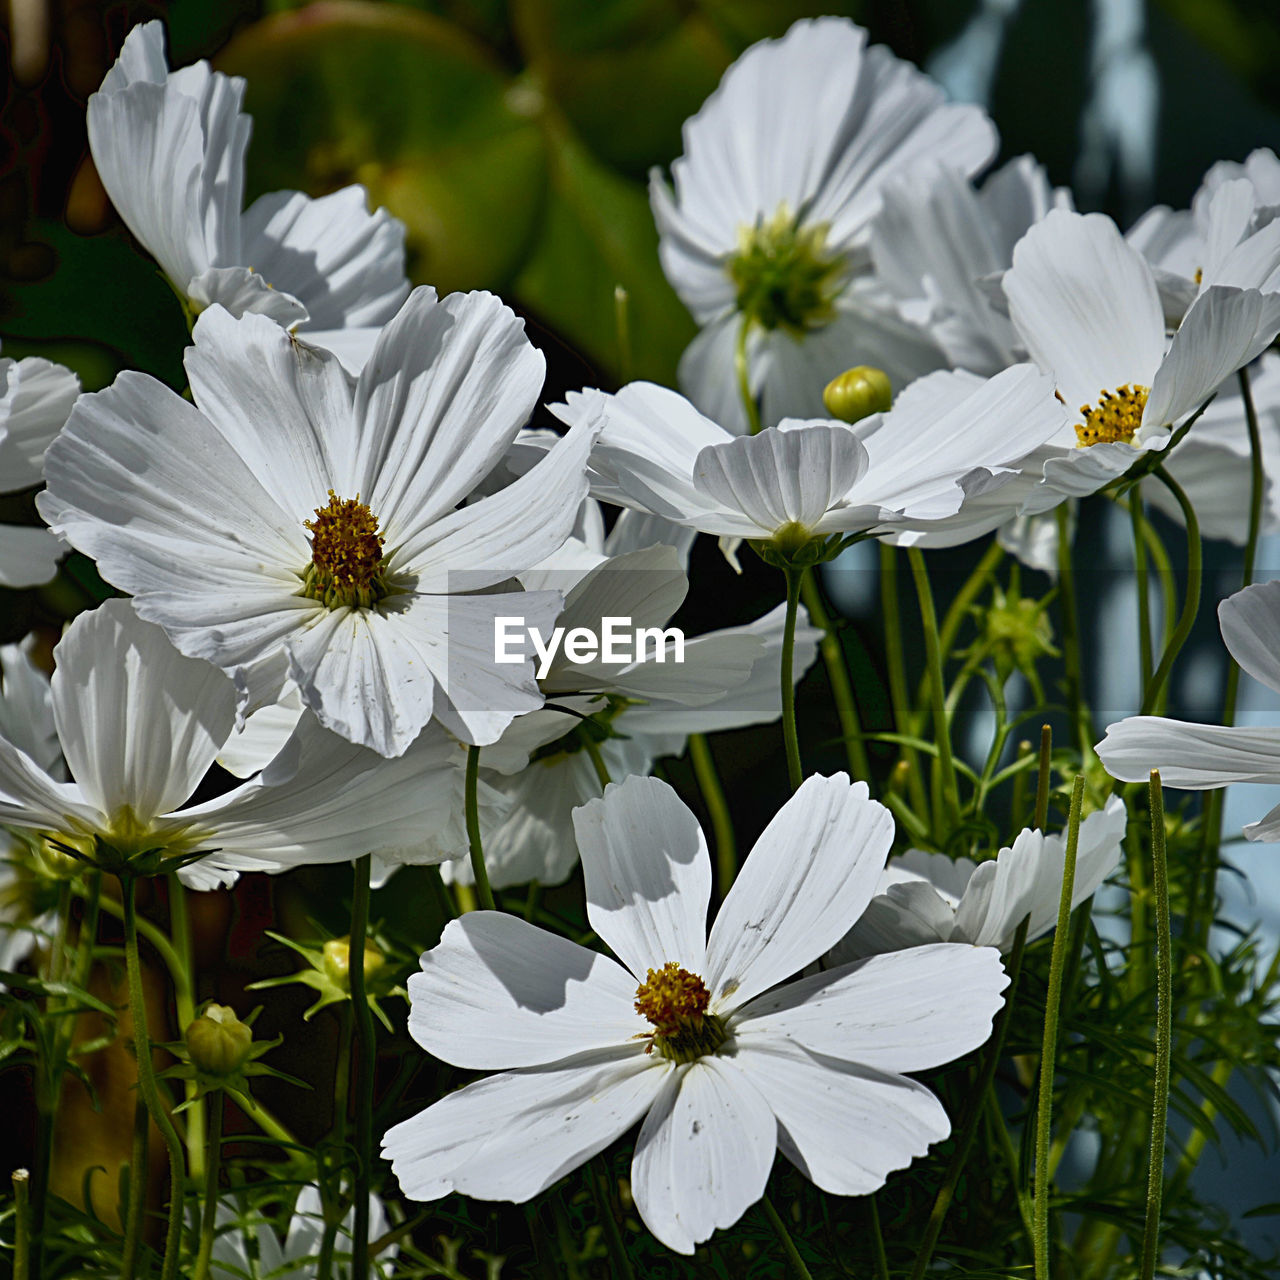 WHITE FLOWERING PLANTS